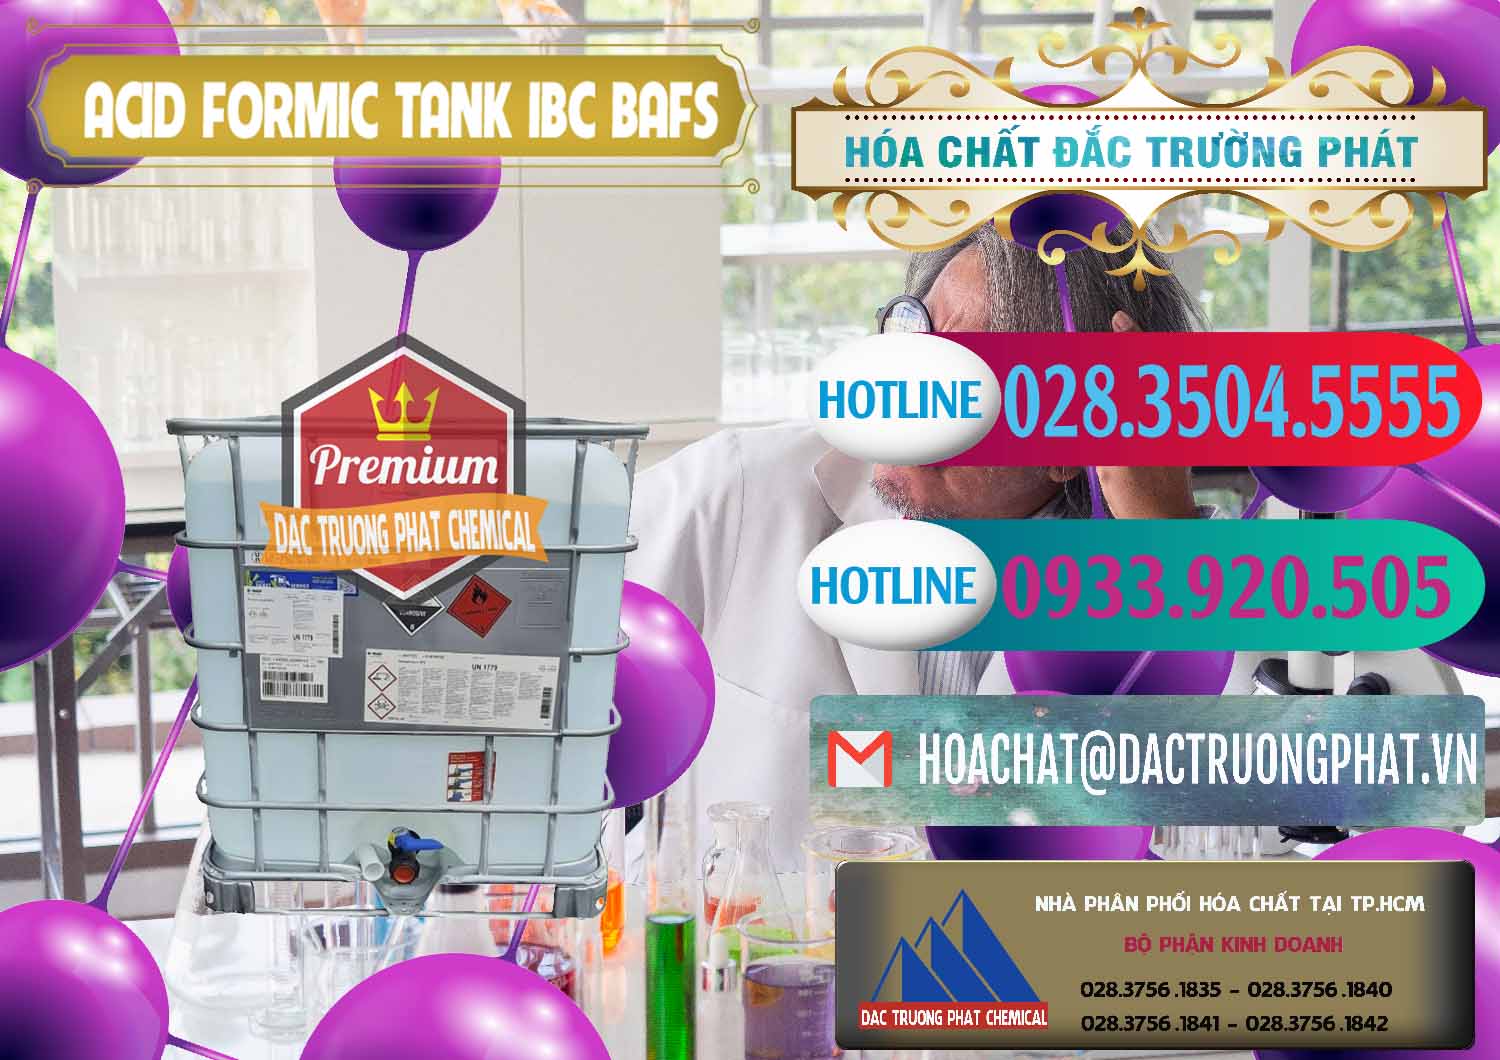 Bán và phân phối Acid Formic - Axit Formic Tank - Bồn IBC BASF Đức - 0366 - Cty chuyên cung cấp - nhập khẩu hóa chất tại TP.HCM - truongphat.vn